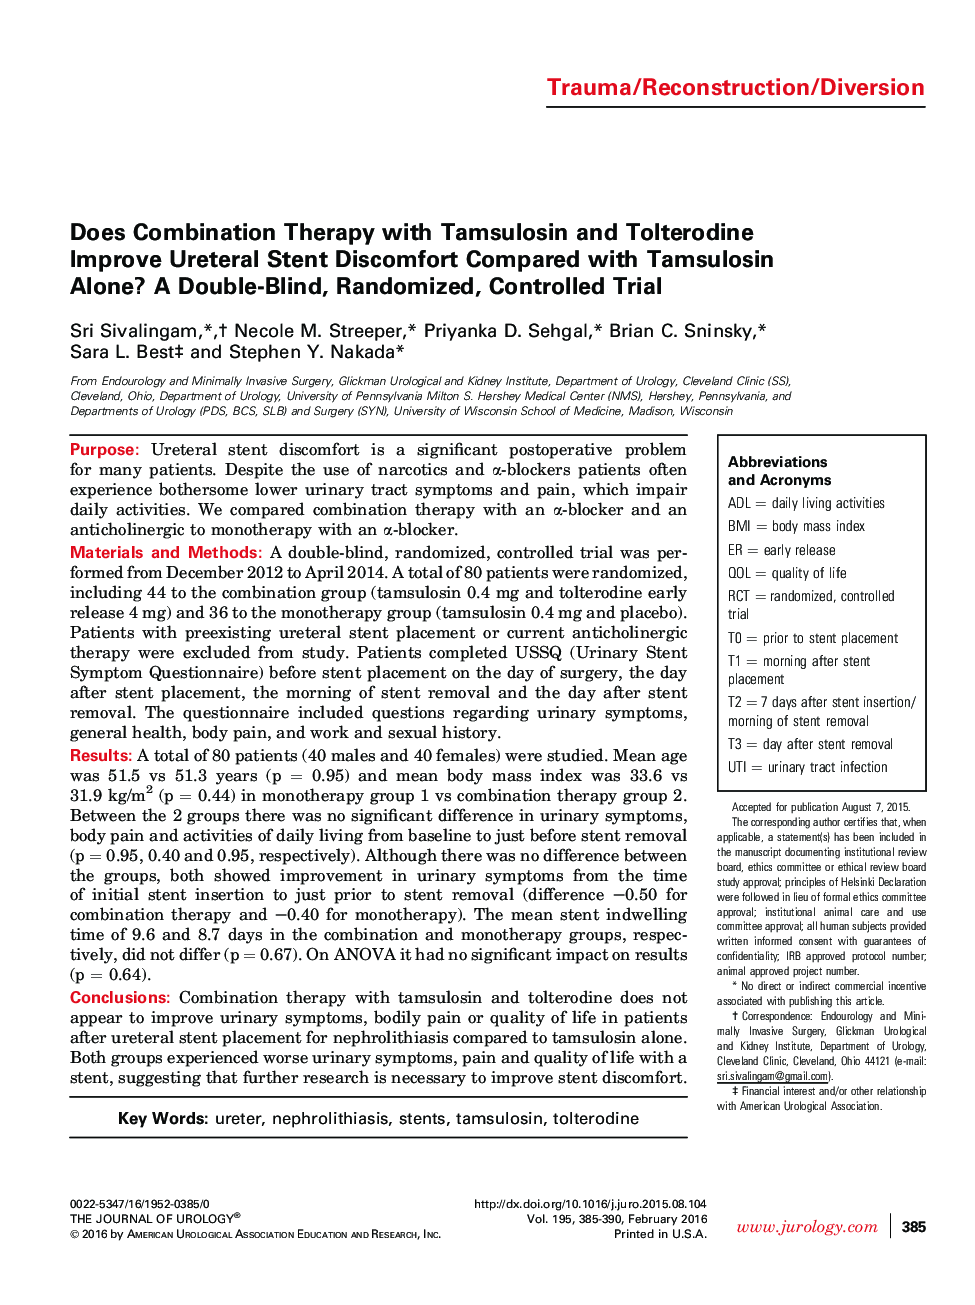 آیا درمان ترکیبی با تامسولوزین و تولترودین ناراحتی استنت ناشی از مدفوع را در مقایسه با تامزولوسین به تنهایی بهبود می بخشد؟ یک آزمایش دوبعدی، تصادفی و کنترل شده 